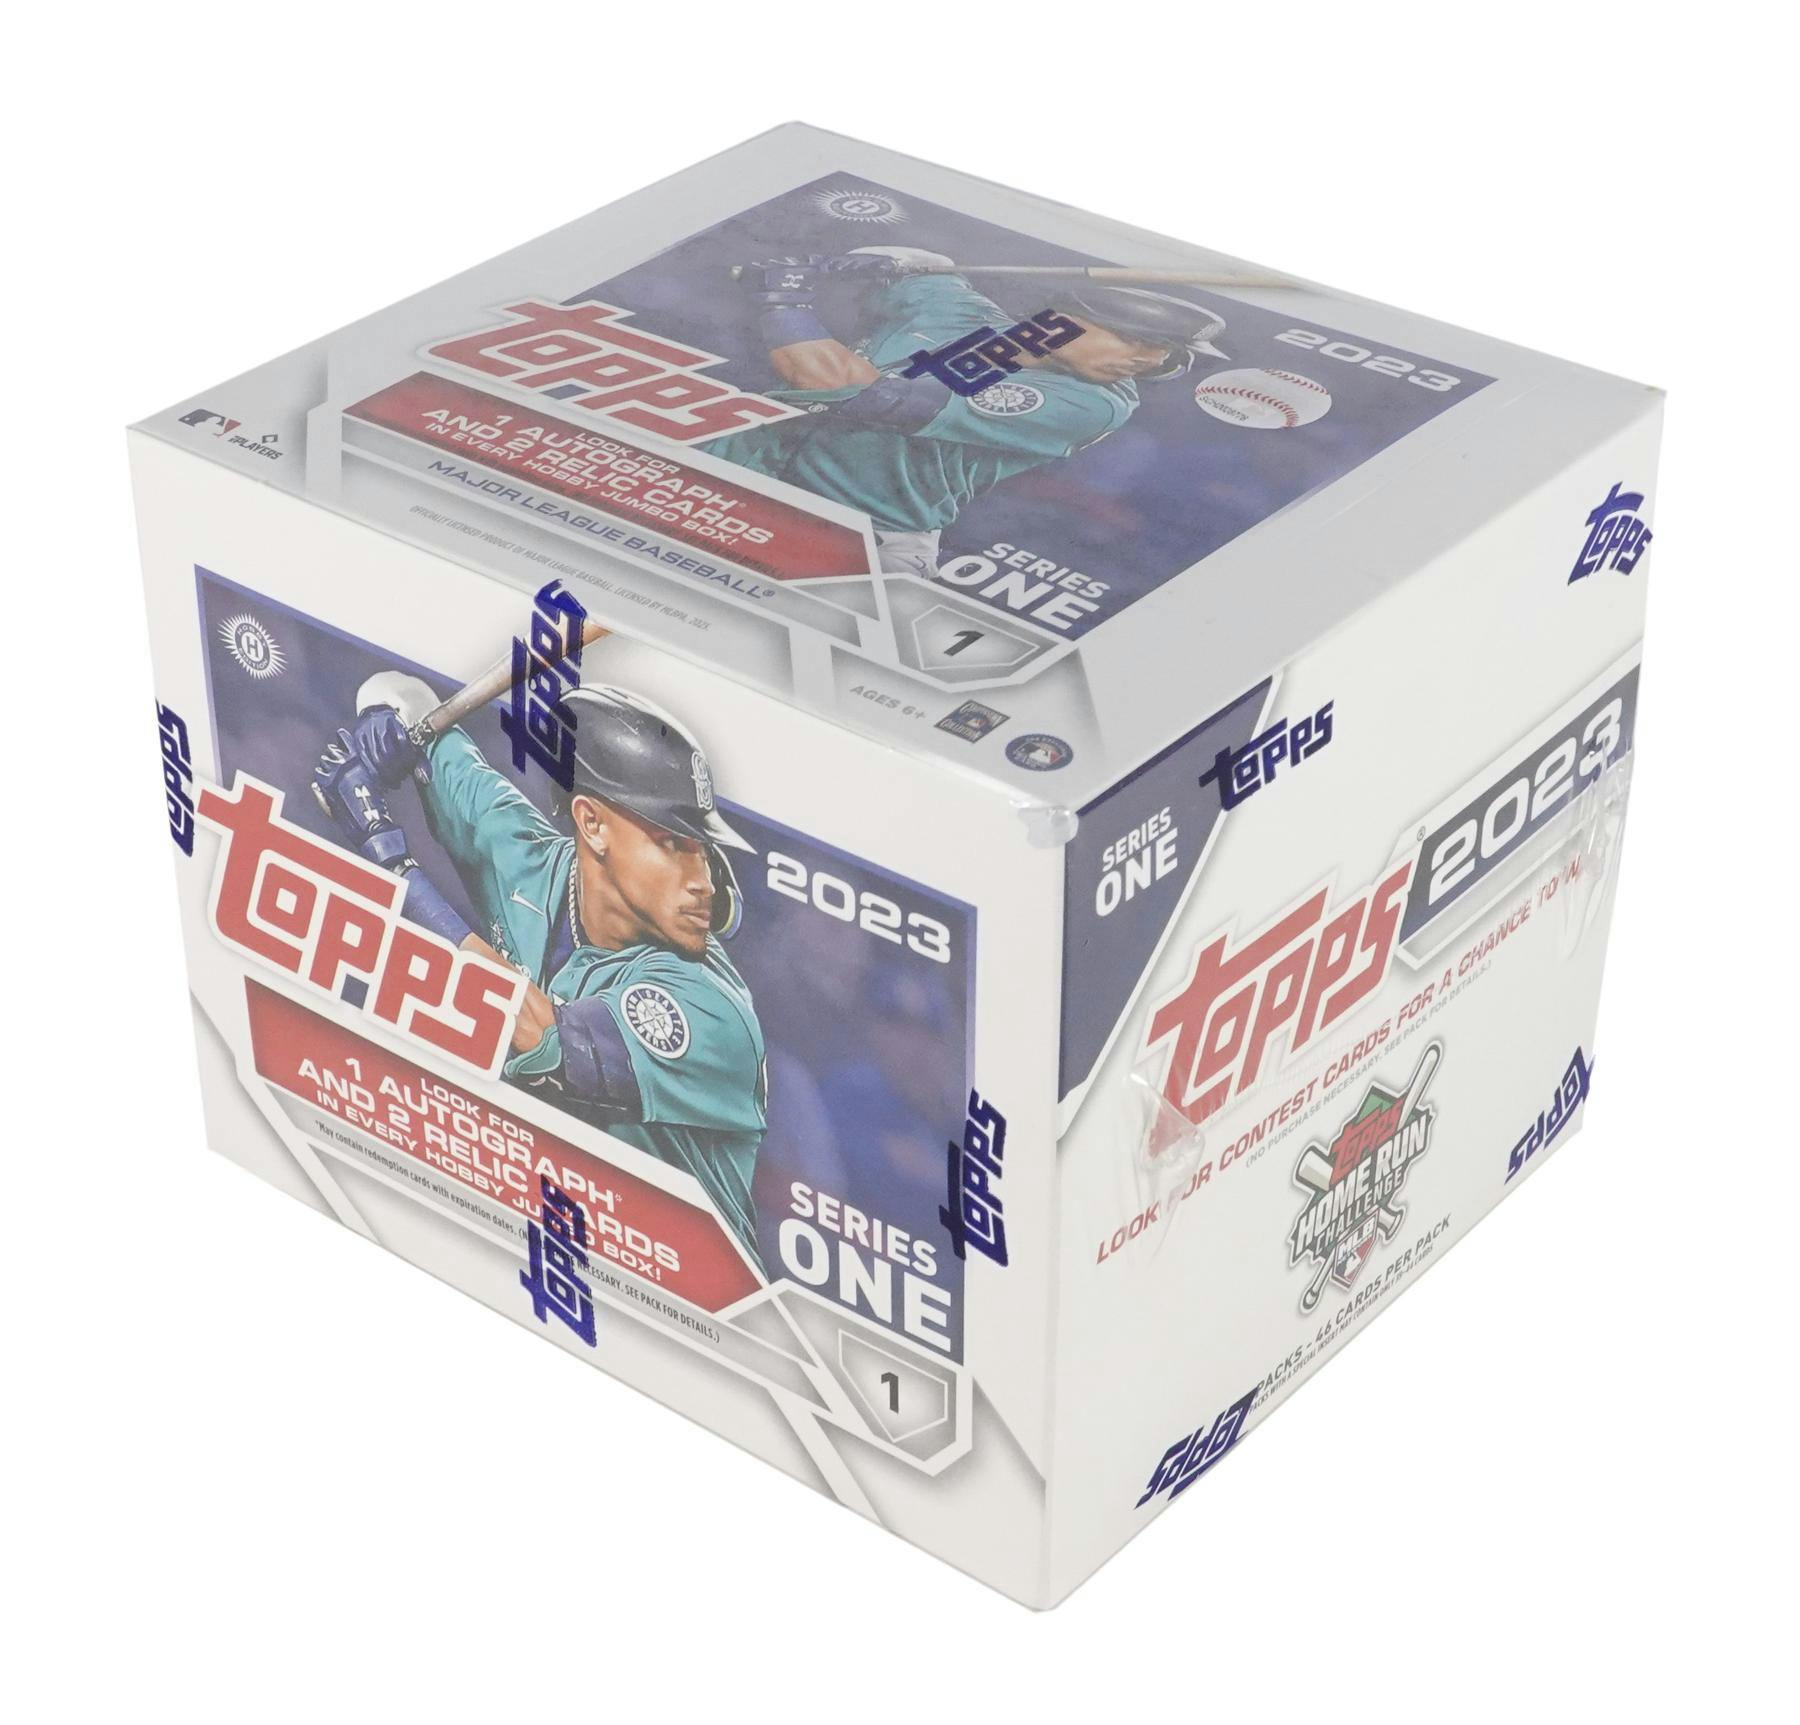 Topps 2023 Series 1 MLB Baseball Blaster Box SP-T23BB1B - Best Buy